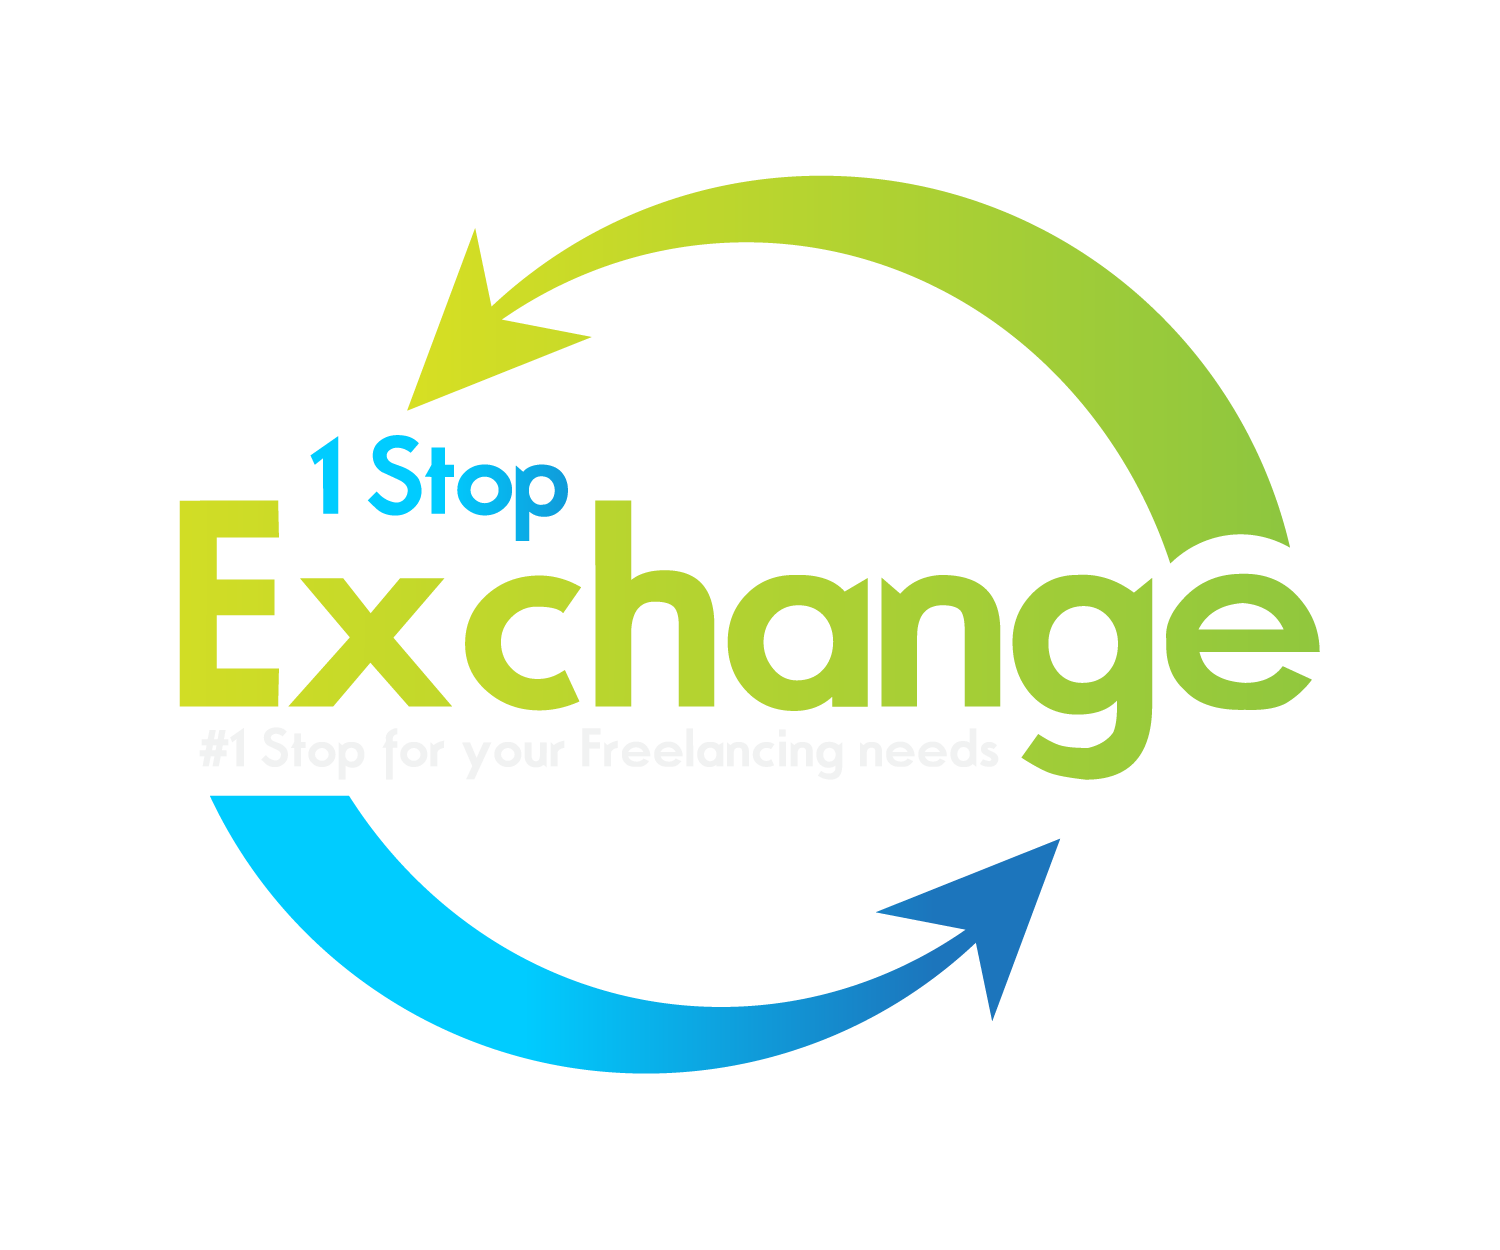 1 Stop Exchange